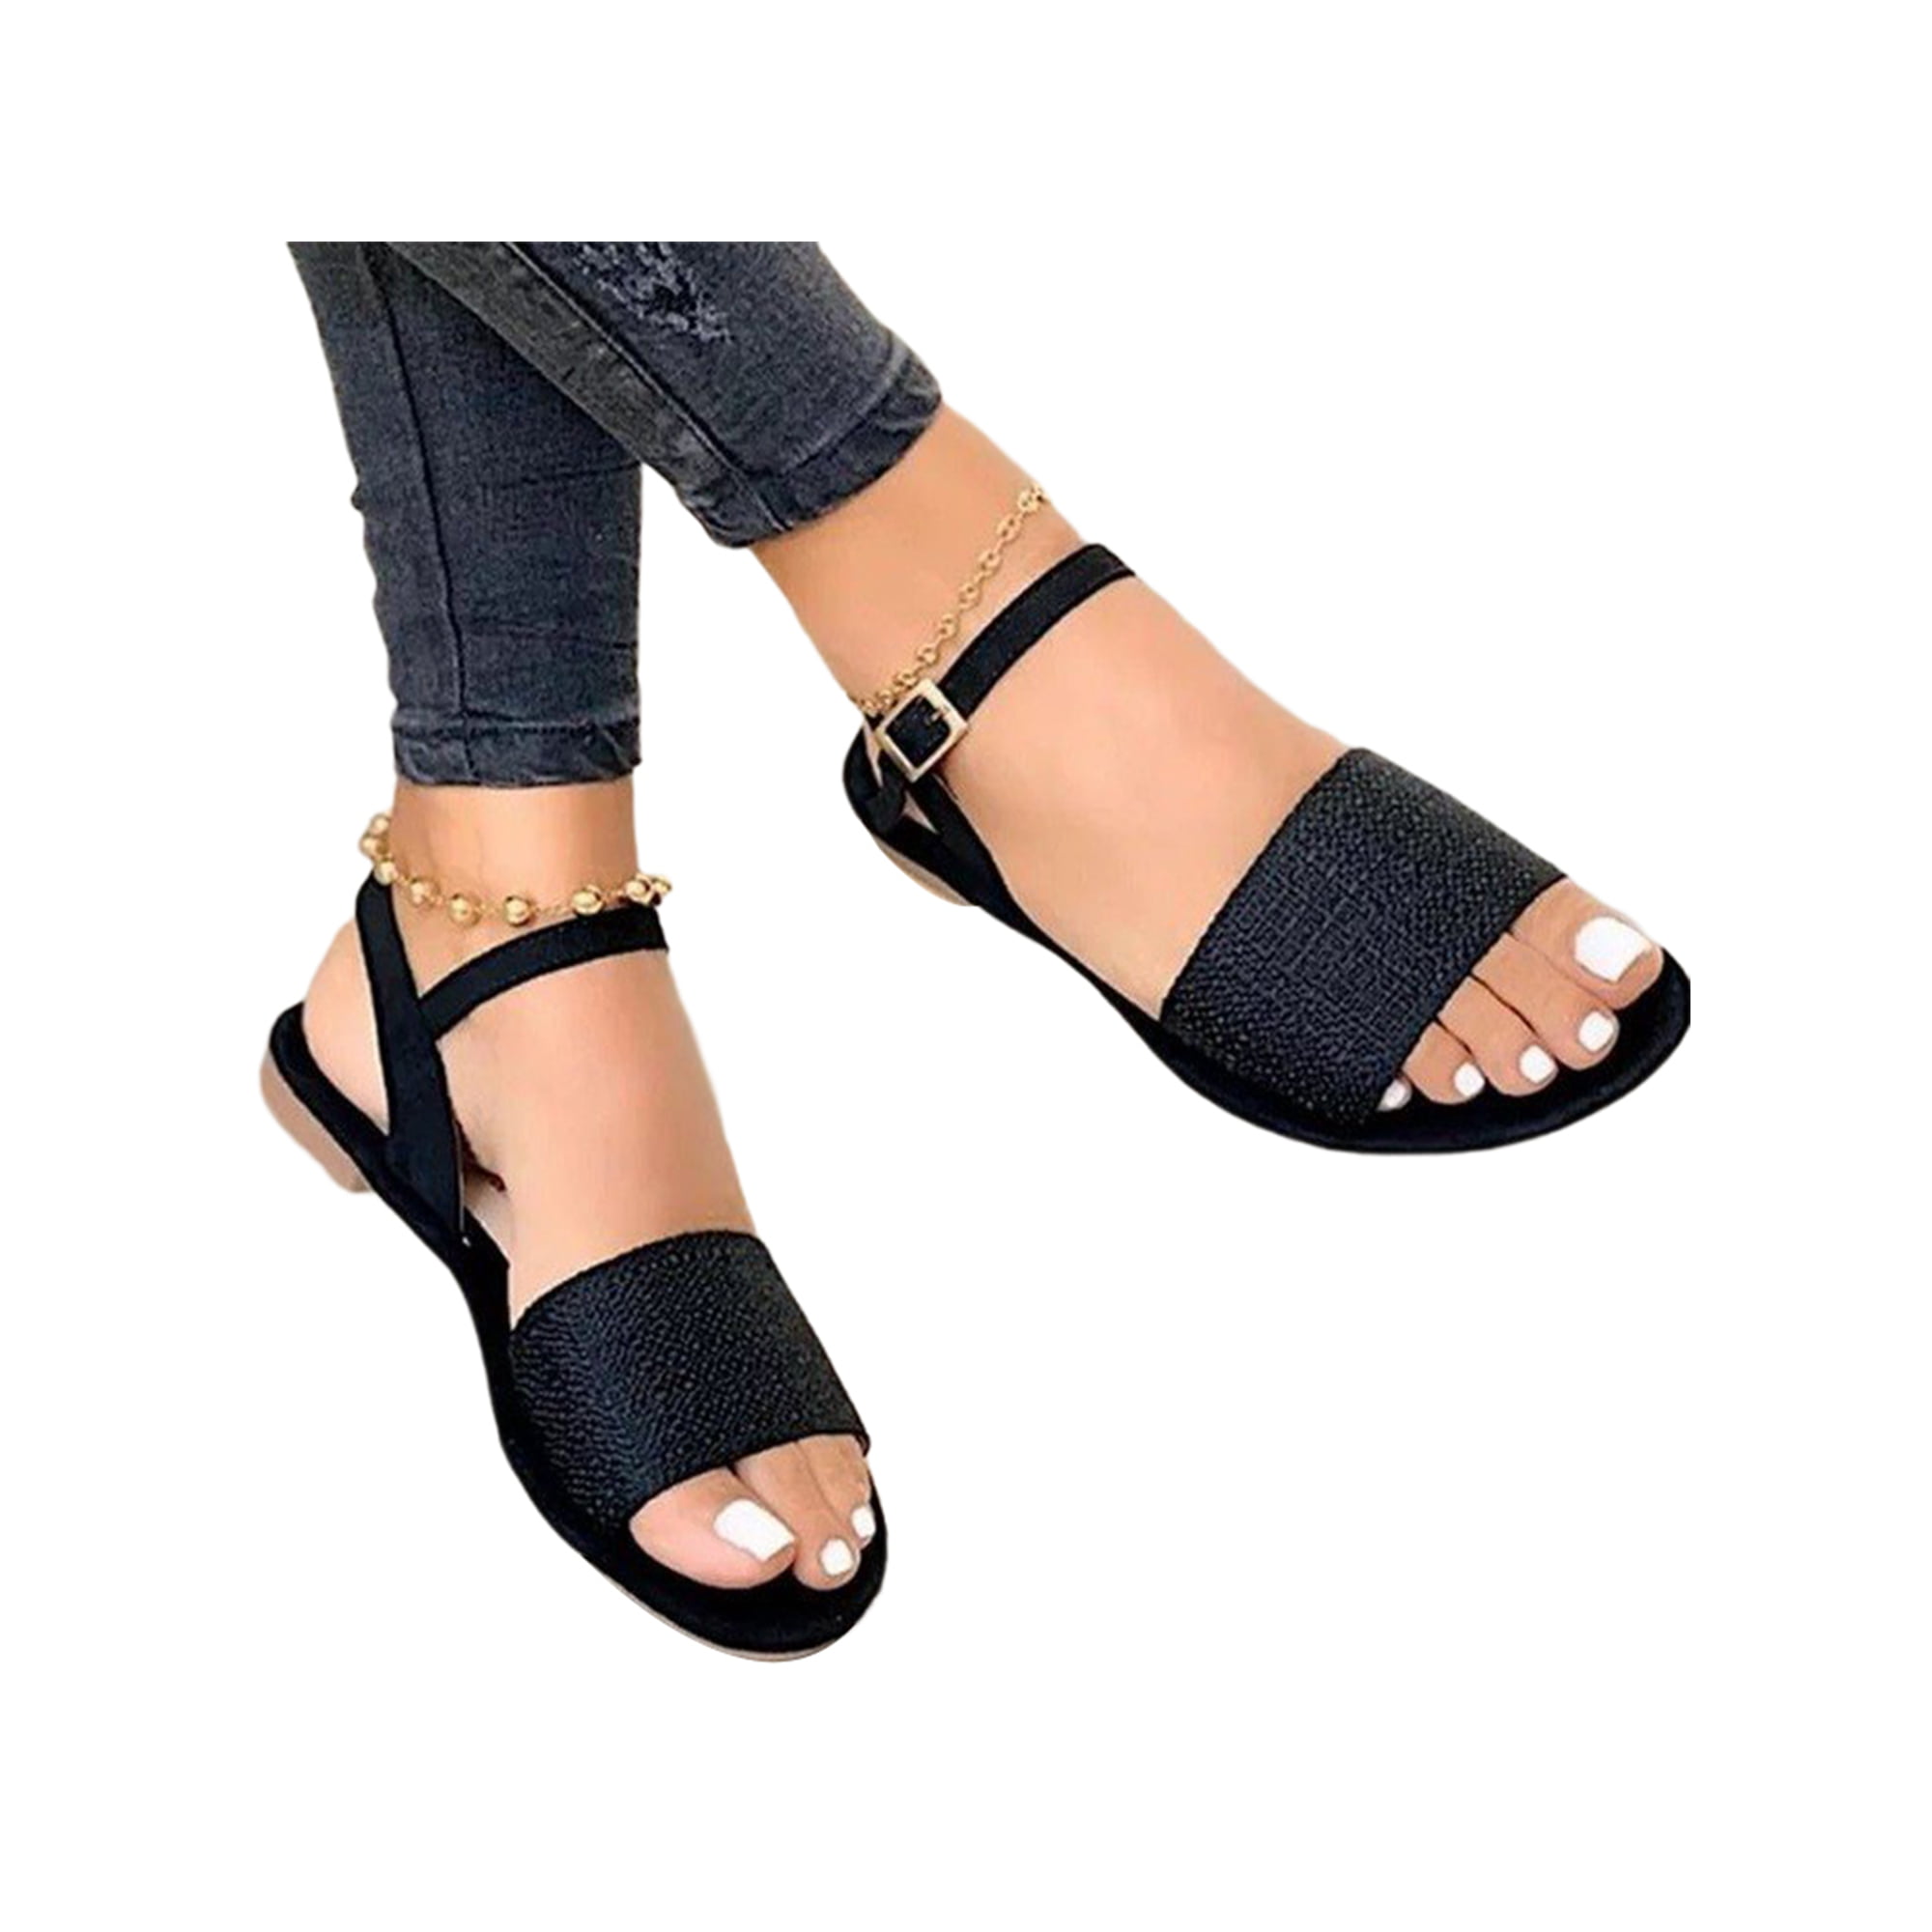 Medarbejder jeans køber Woobling Women Flat Sandal Comfort Dress Sandals Ankle Strap Summer Flats  Lightweight Shoe Daily Wedding Casual Shoes Black 5.5 - Walmart.com